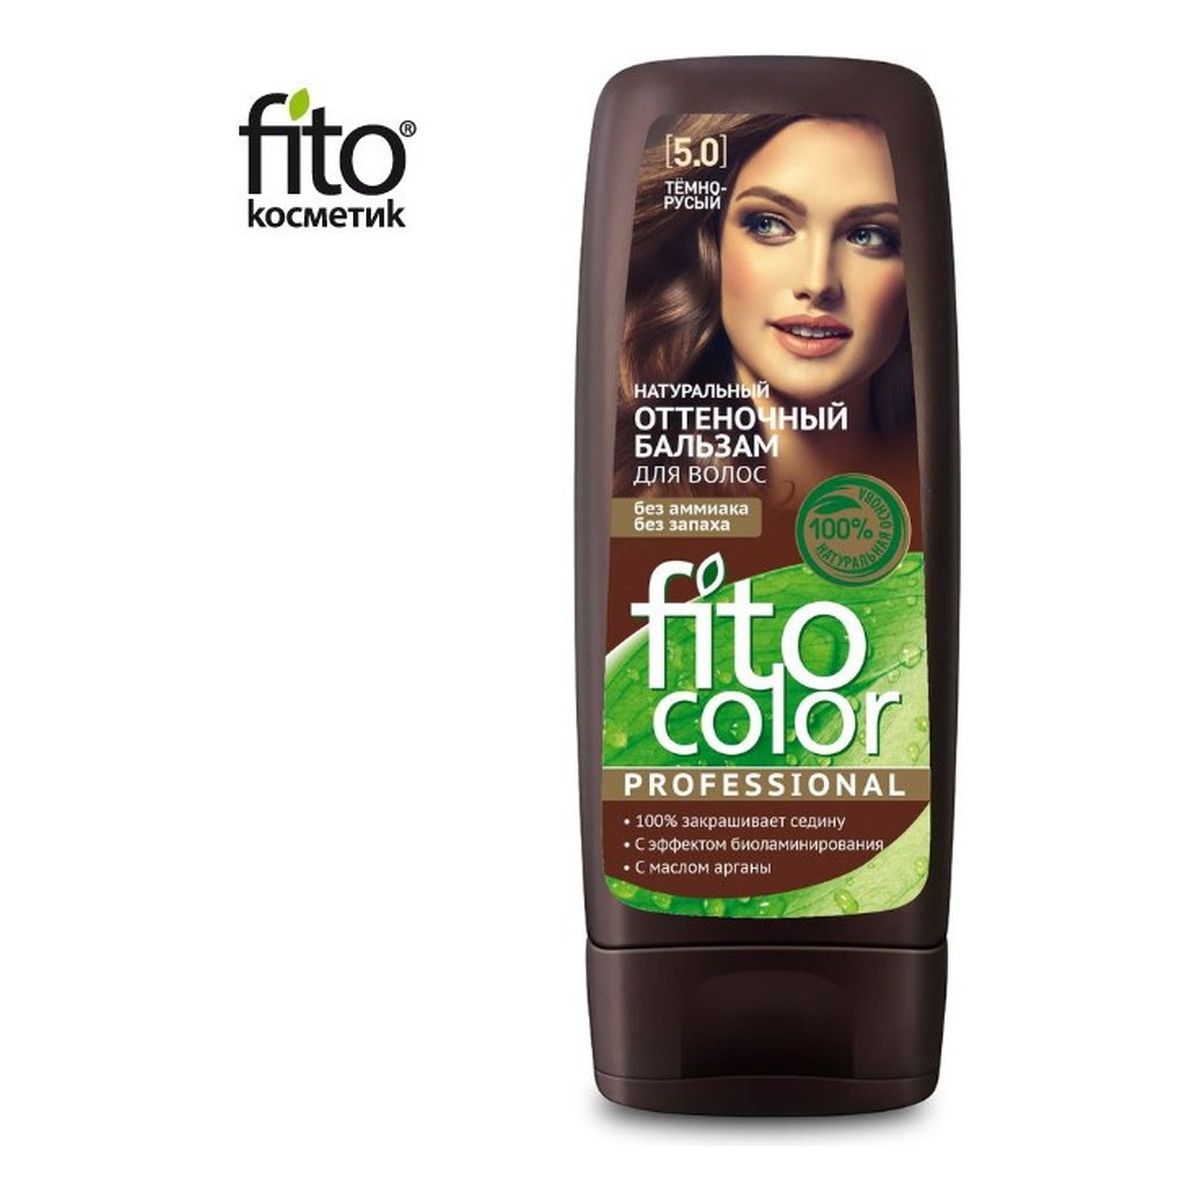 Fitokosmetik Fito Color Naturalny balsam KOLORYZUJĄCY do włosów 140ml